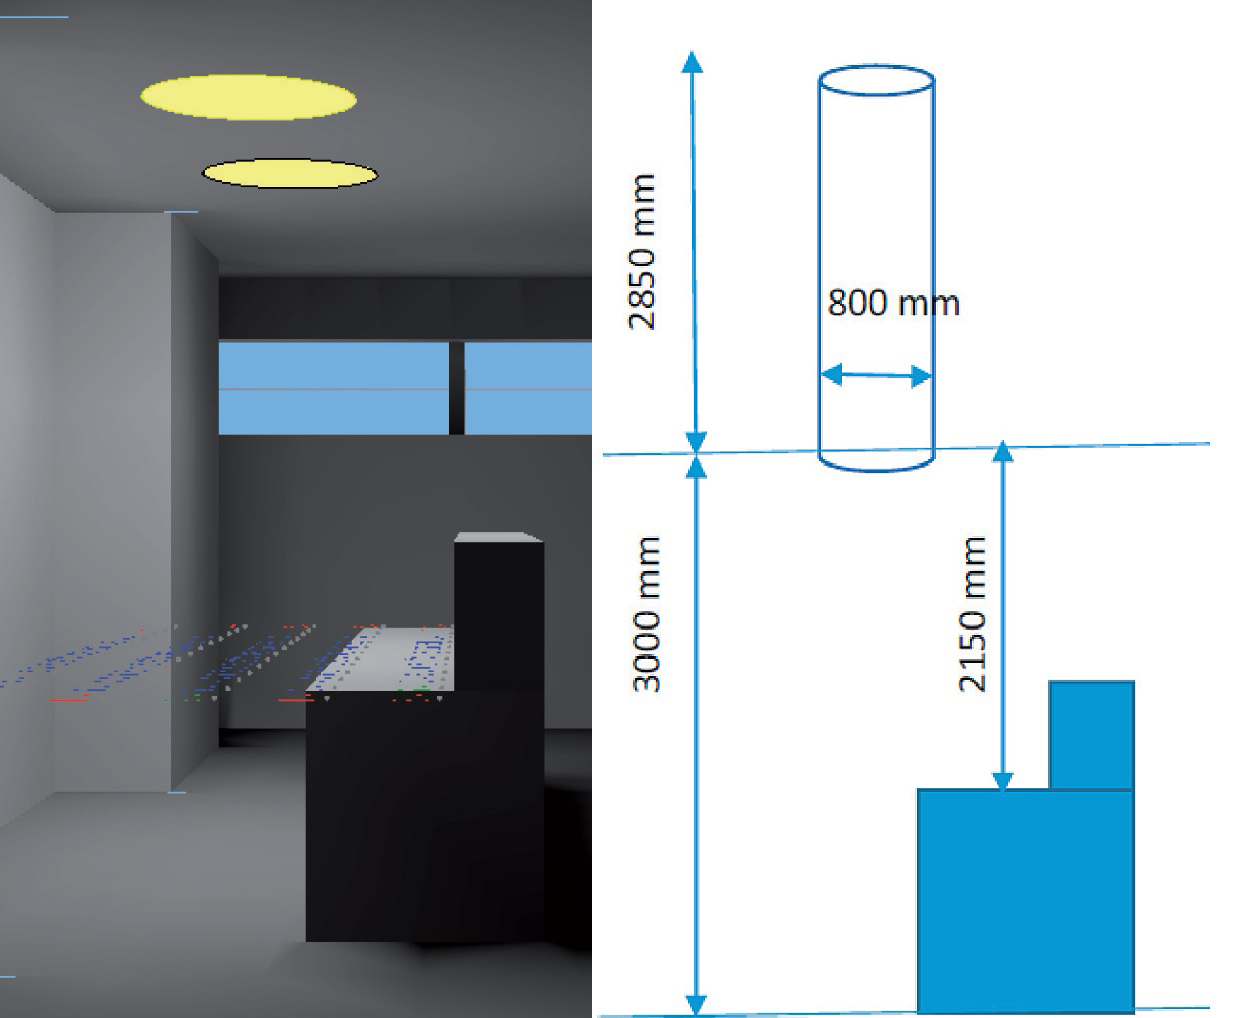 Obr. 1 Simulační výpočtový model a schéma umístění světlovodů v místnosti recepce